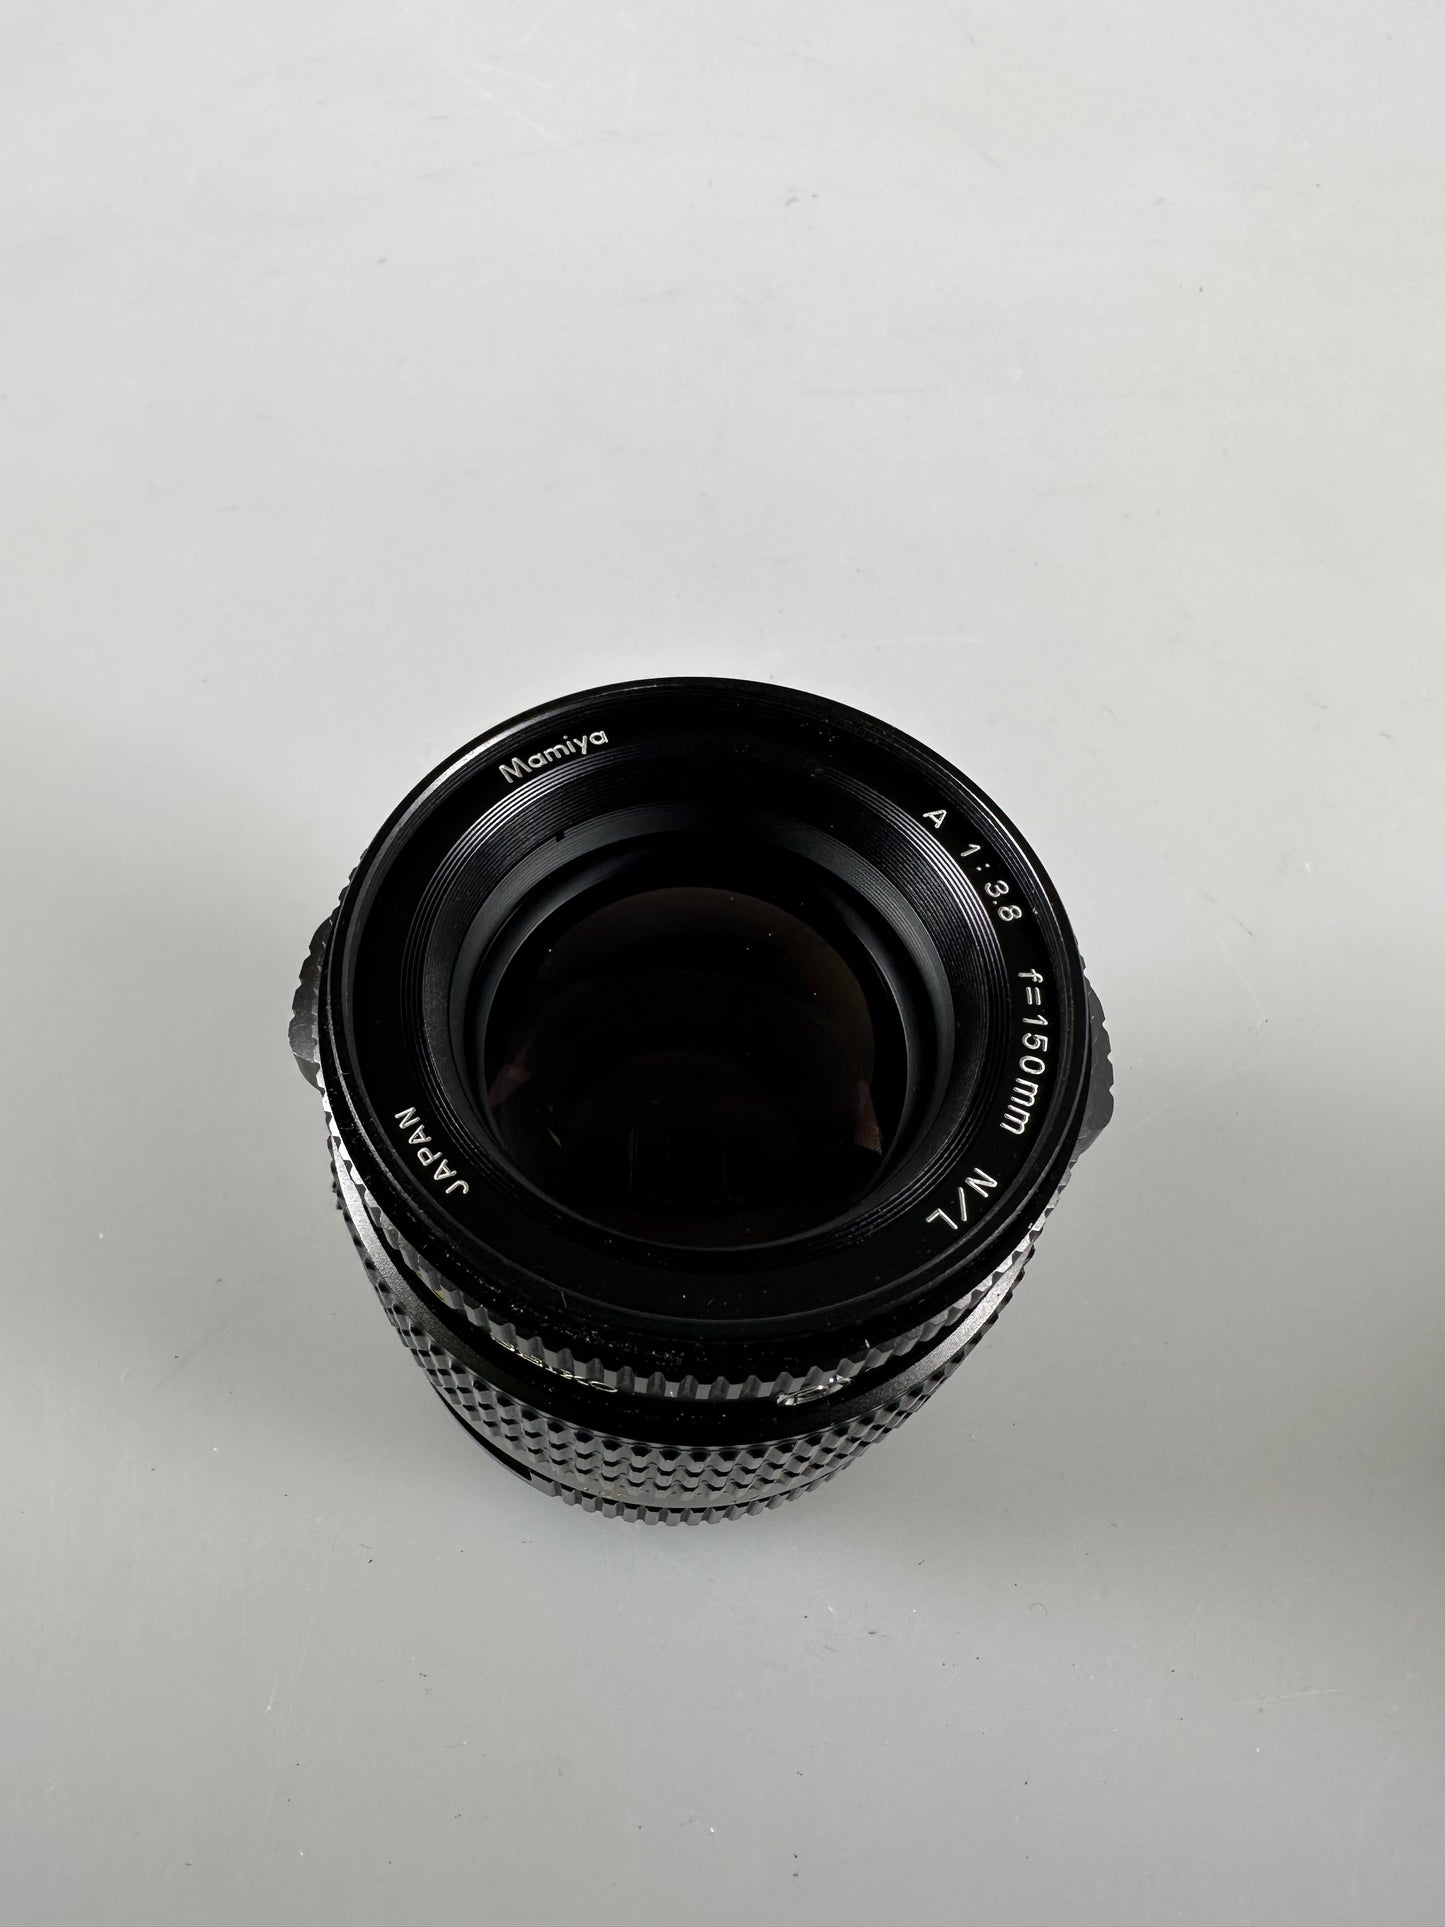 MAMIYA A 150mm F3.8 N/L MF Leaf Shutter Lens For 645 Pro